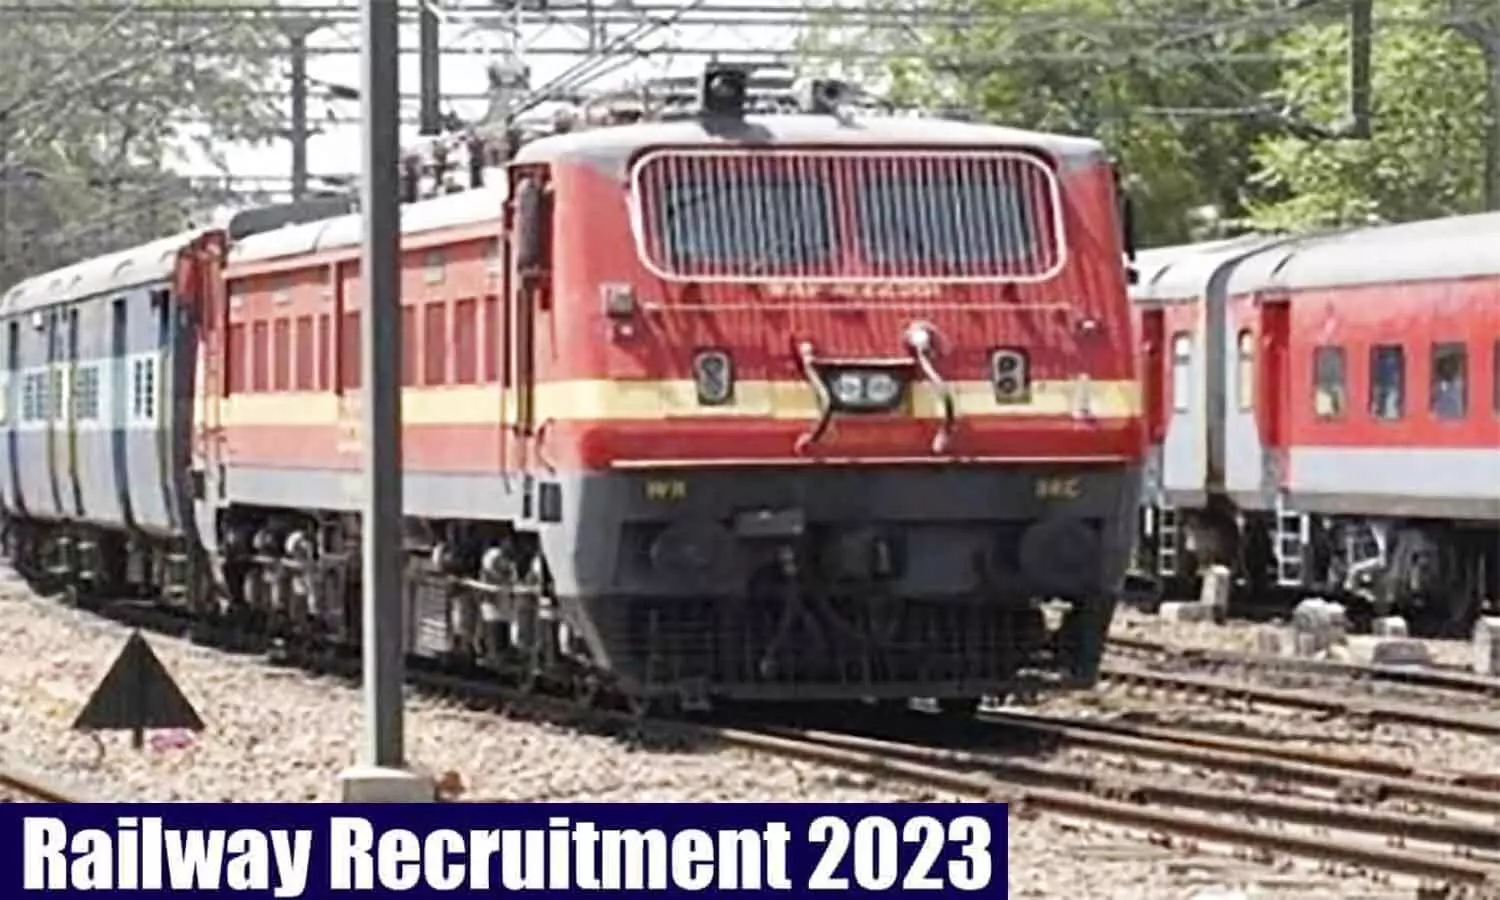 Railway Recruitment 2023: इंडियन रेलवे में 772 पदों पर निकली वैकेंसी, क्वालिफिकेशन व एज लिमिट फटाफट जान लें